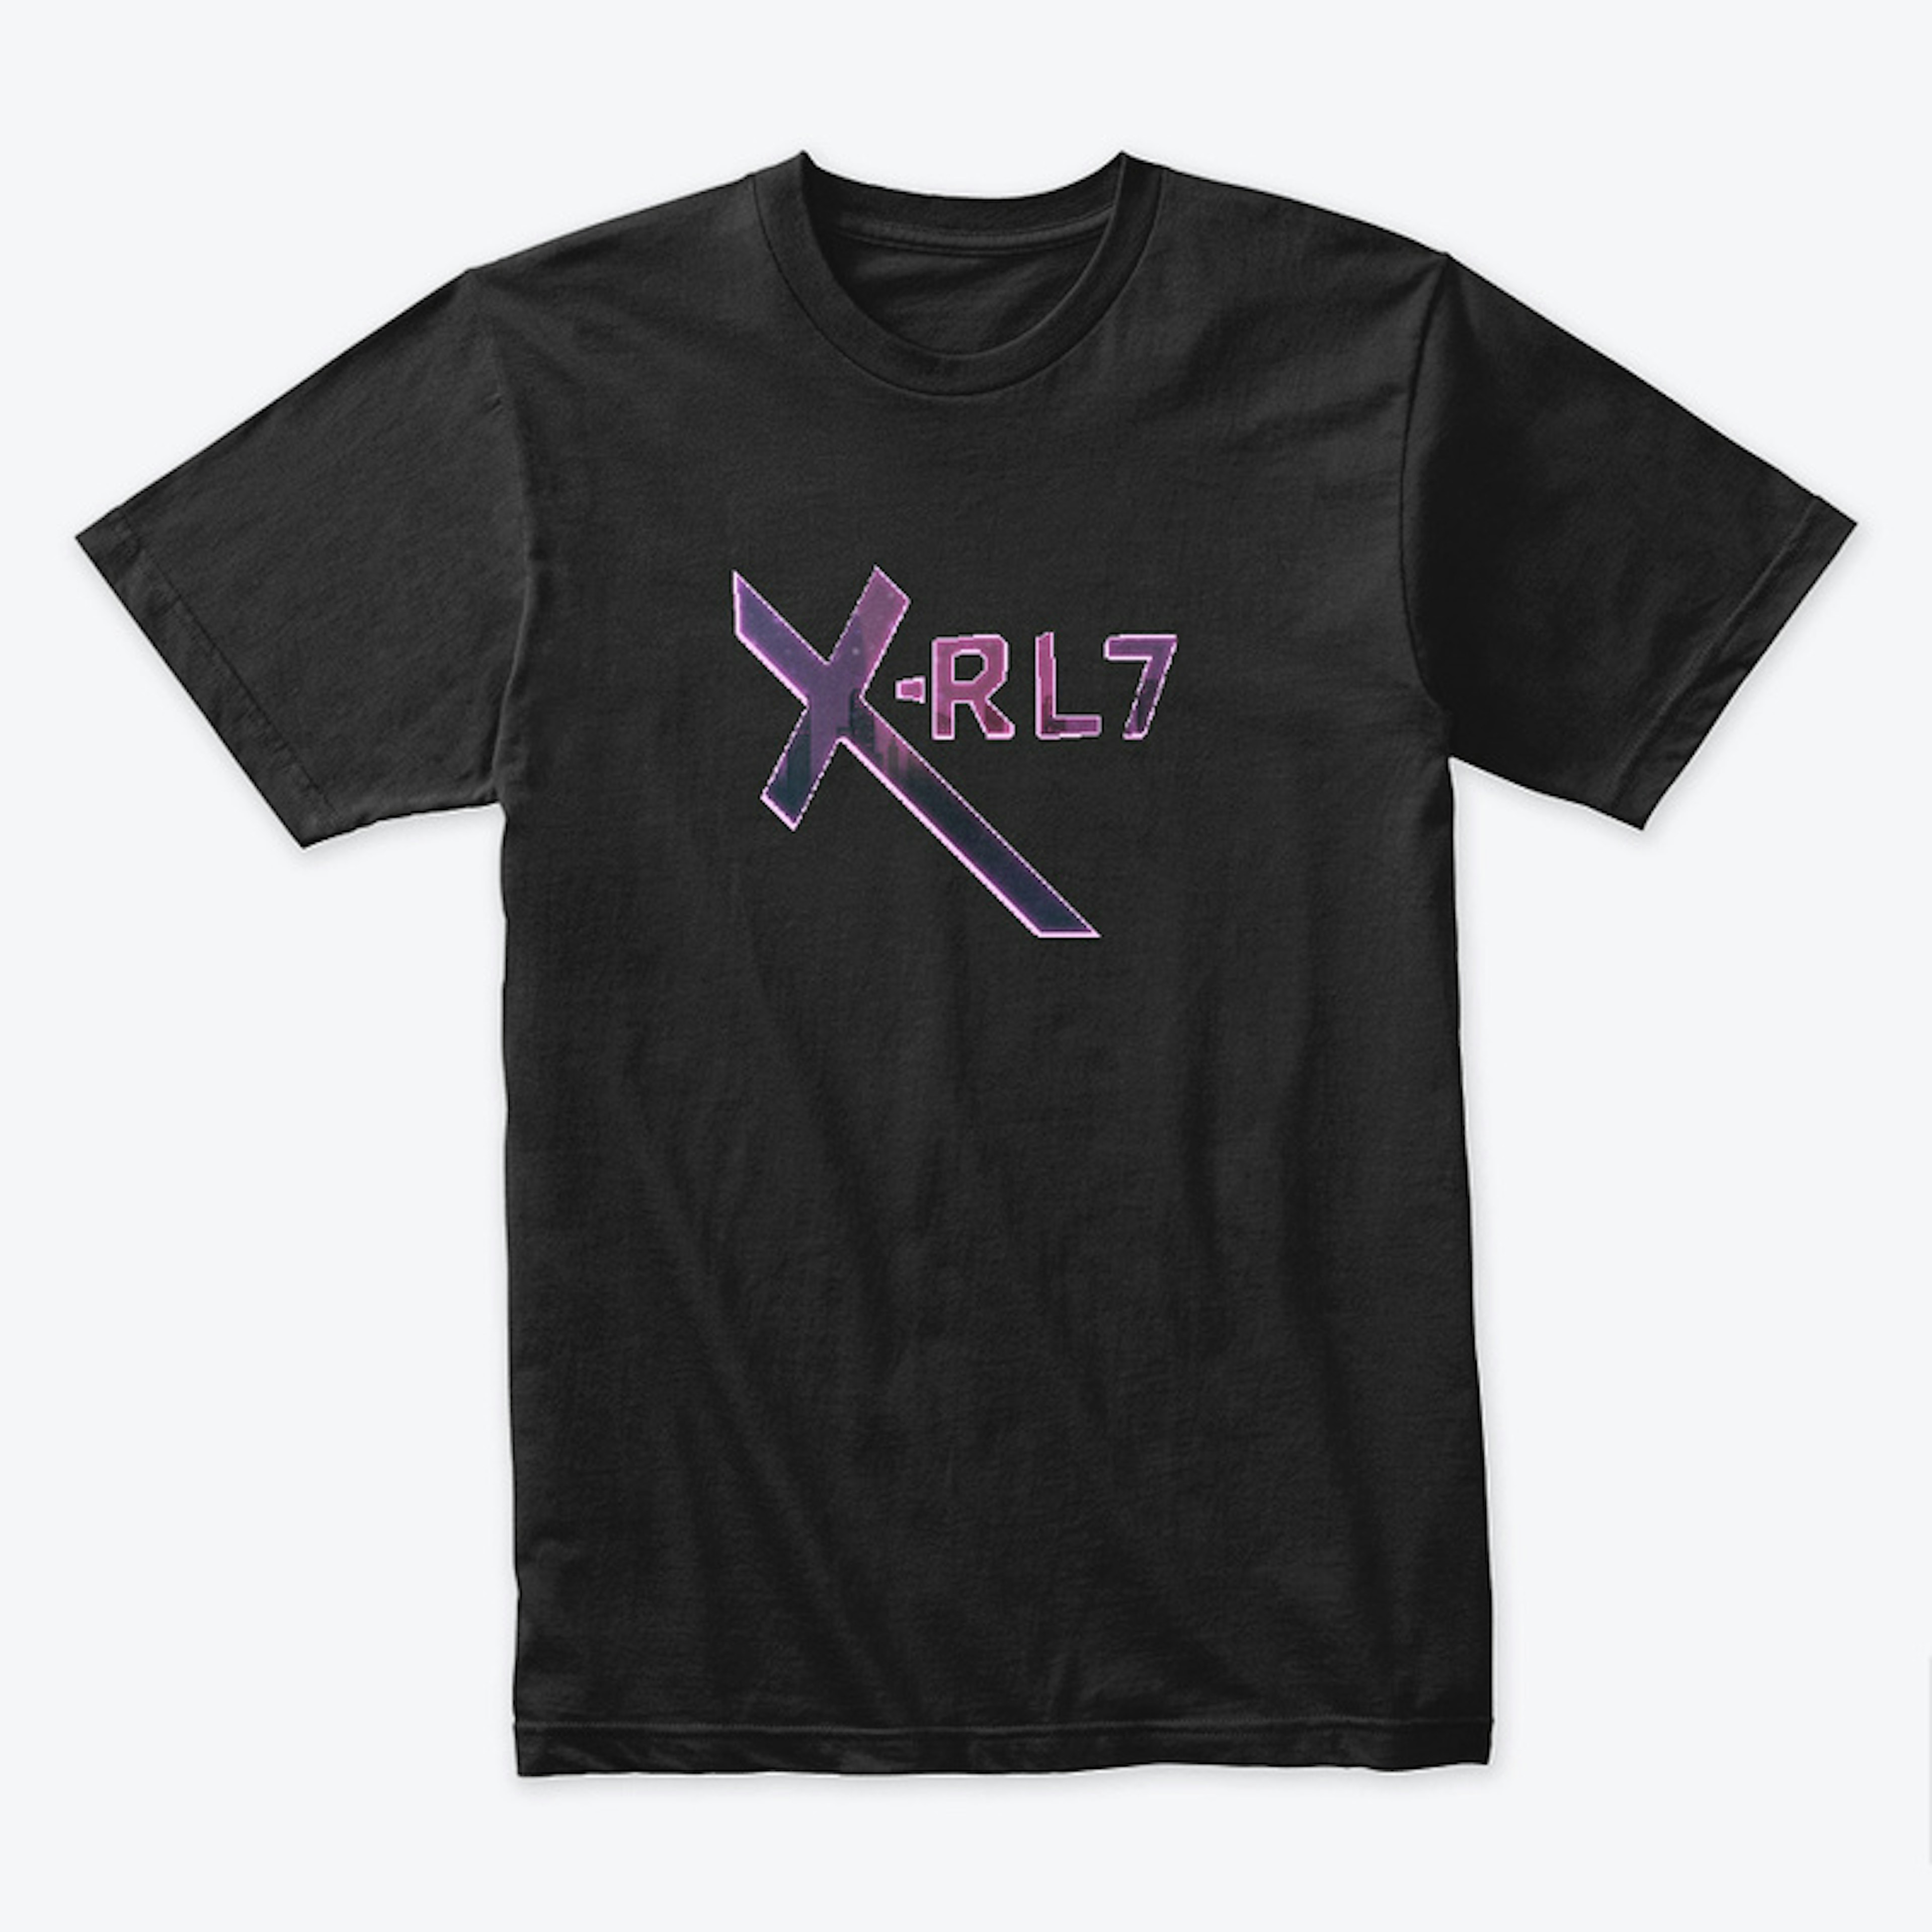 X-RL7 Logo 1